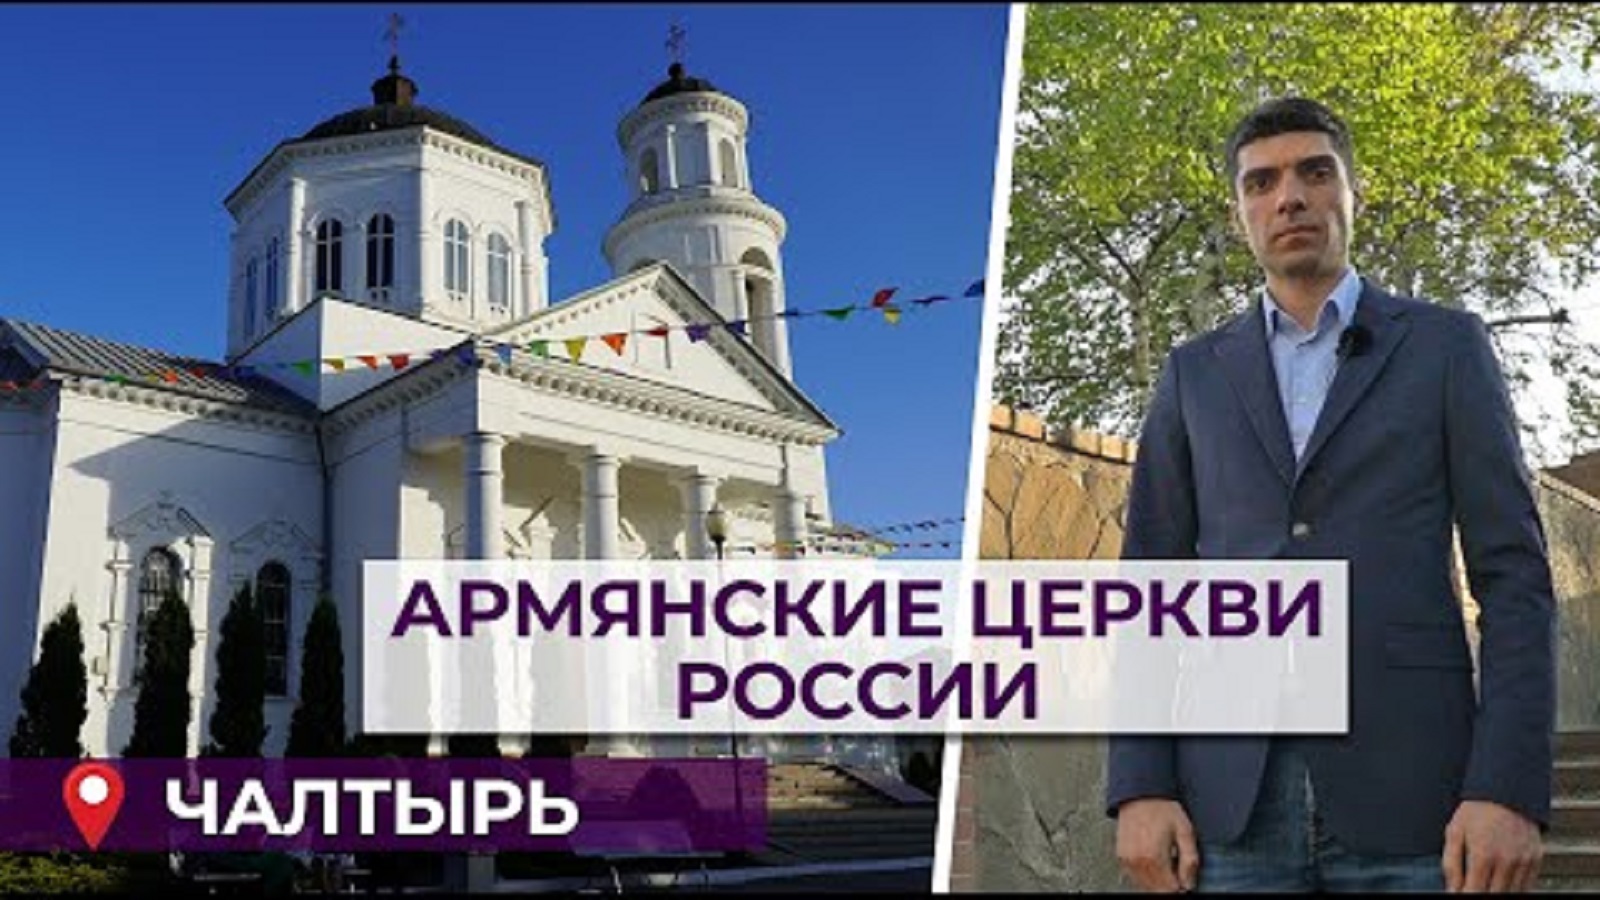 Армянские церкви России/Чалтырь